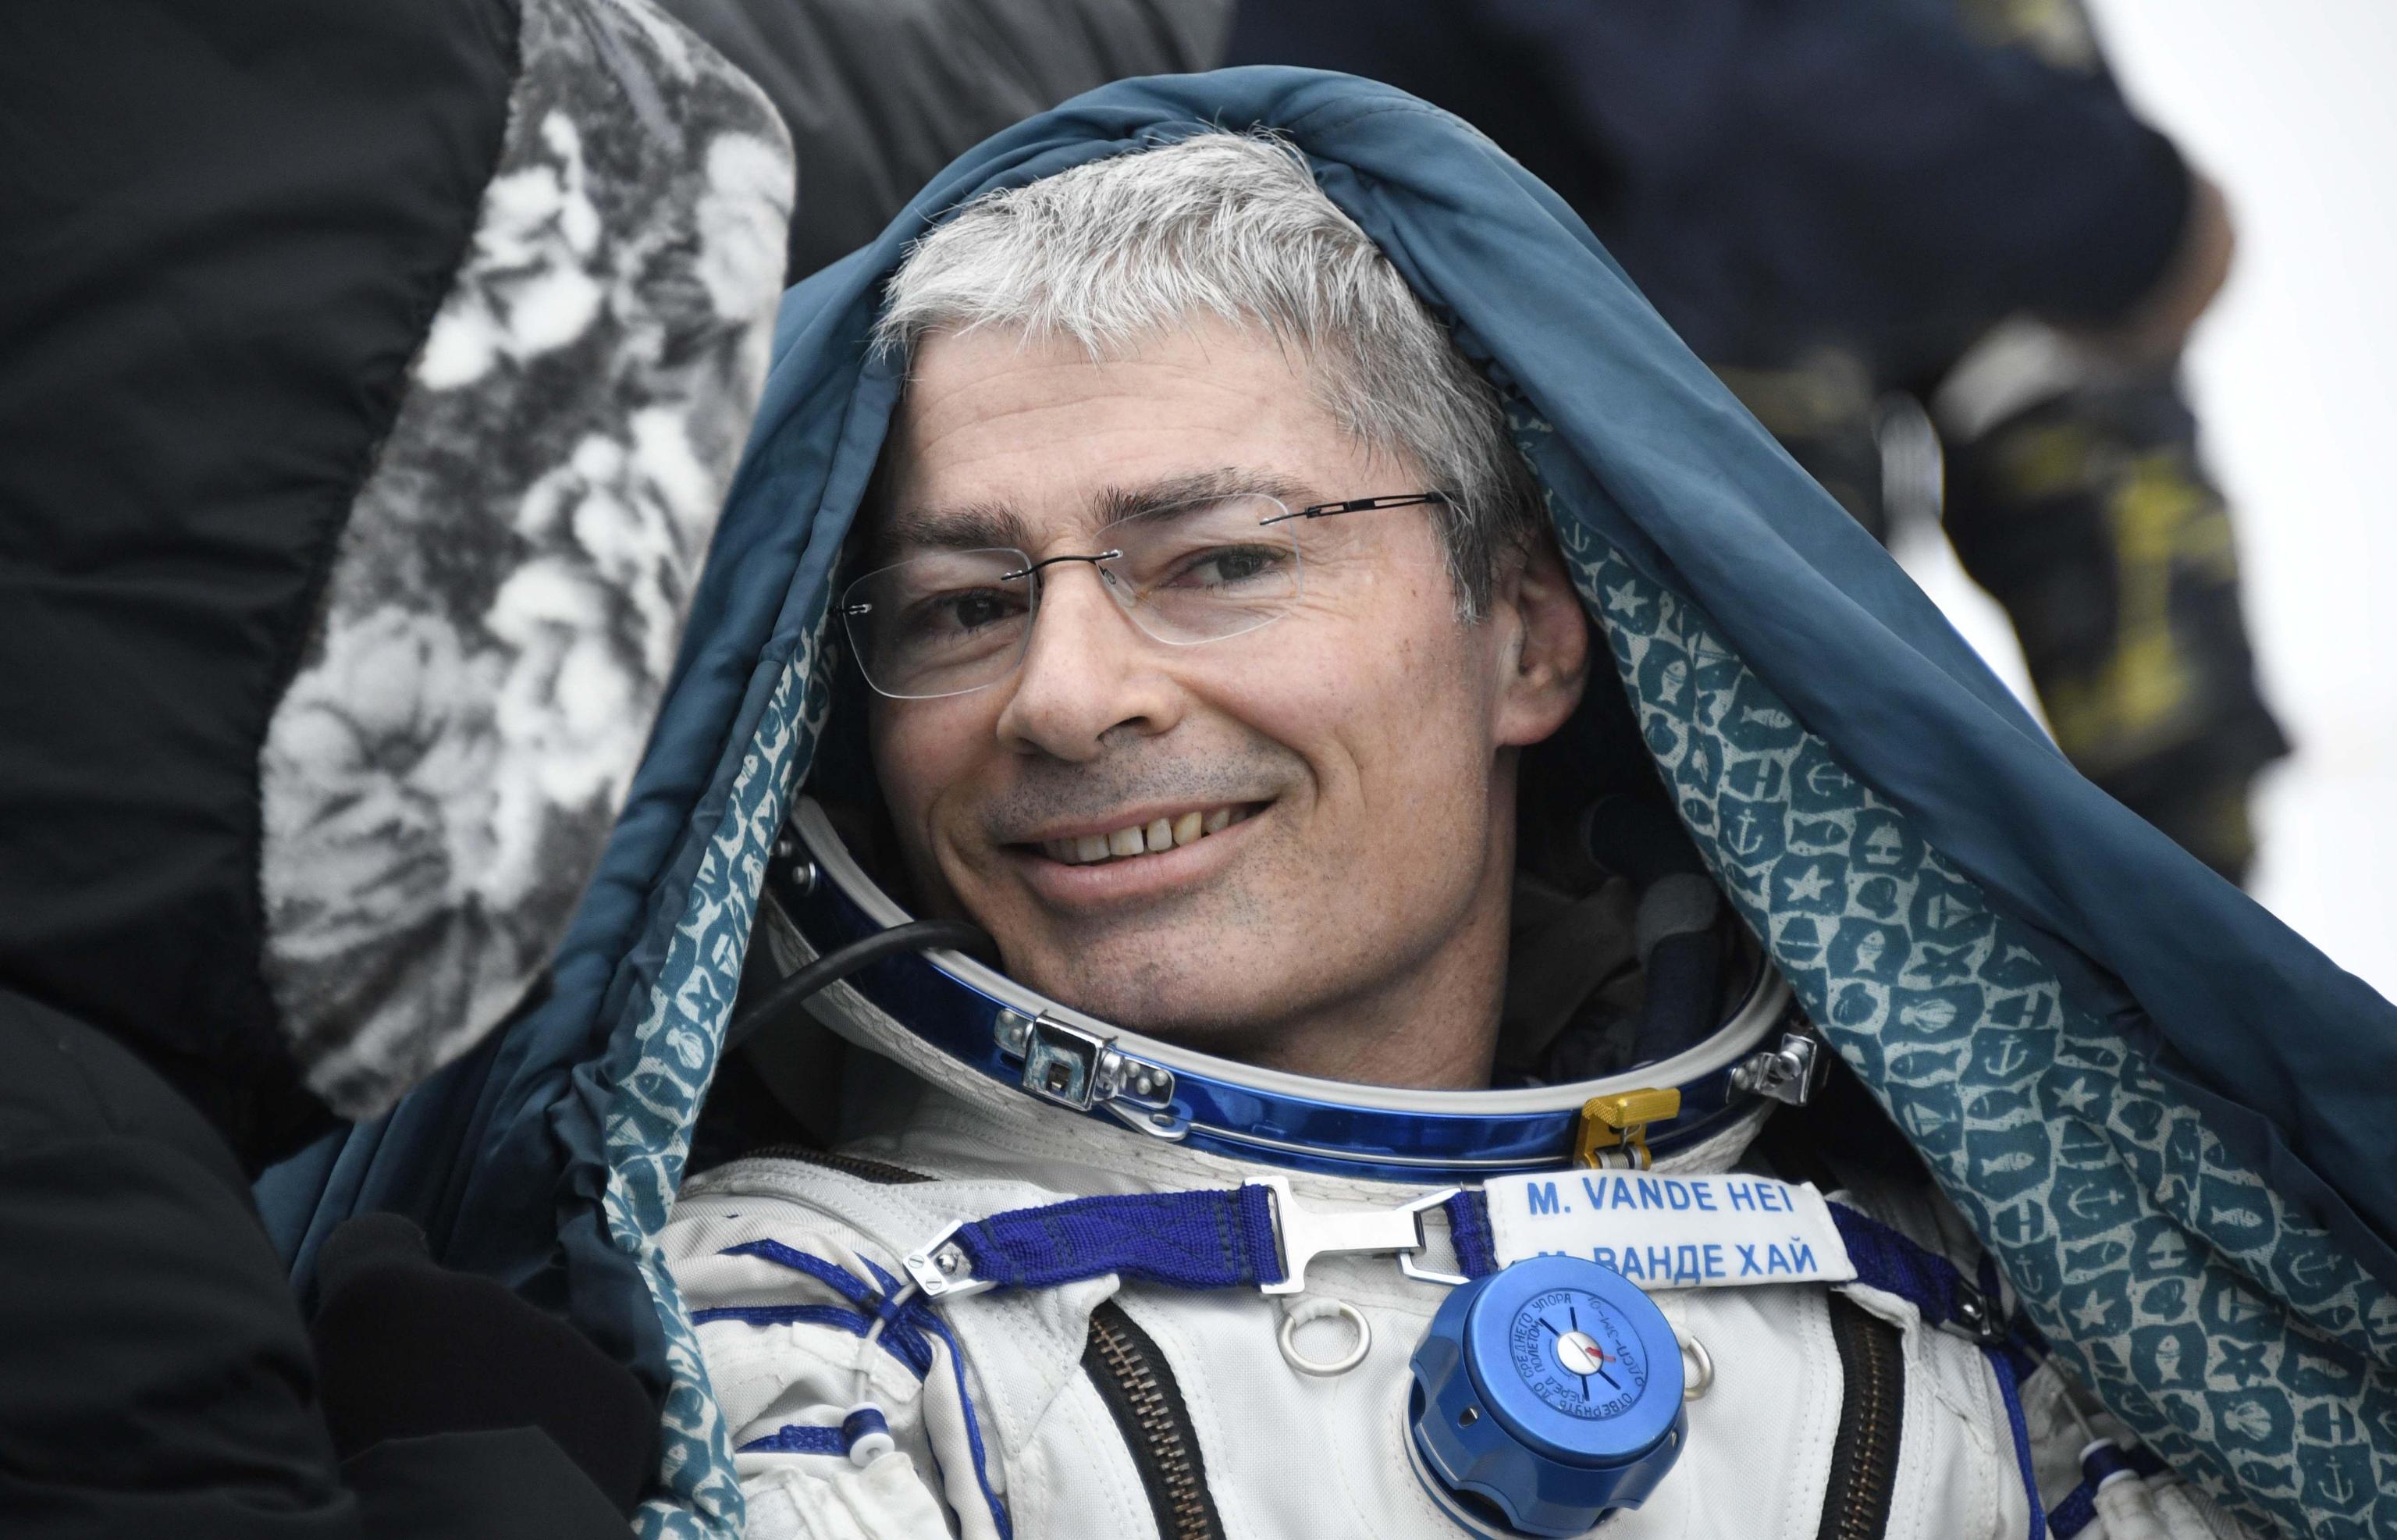 Mark Thomas Vande Hei (Falls Church, 10 novembre 1966) è un astronauta statunitense. Era partito con i colleghi Misurkin e Acaba il 12 settembre 2017